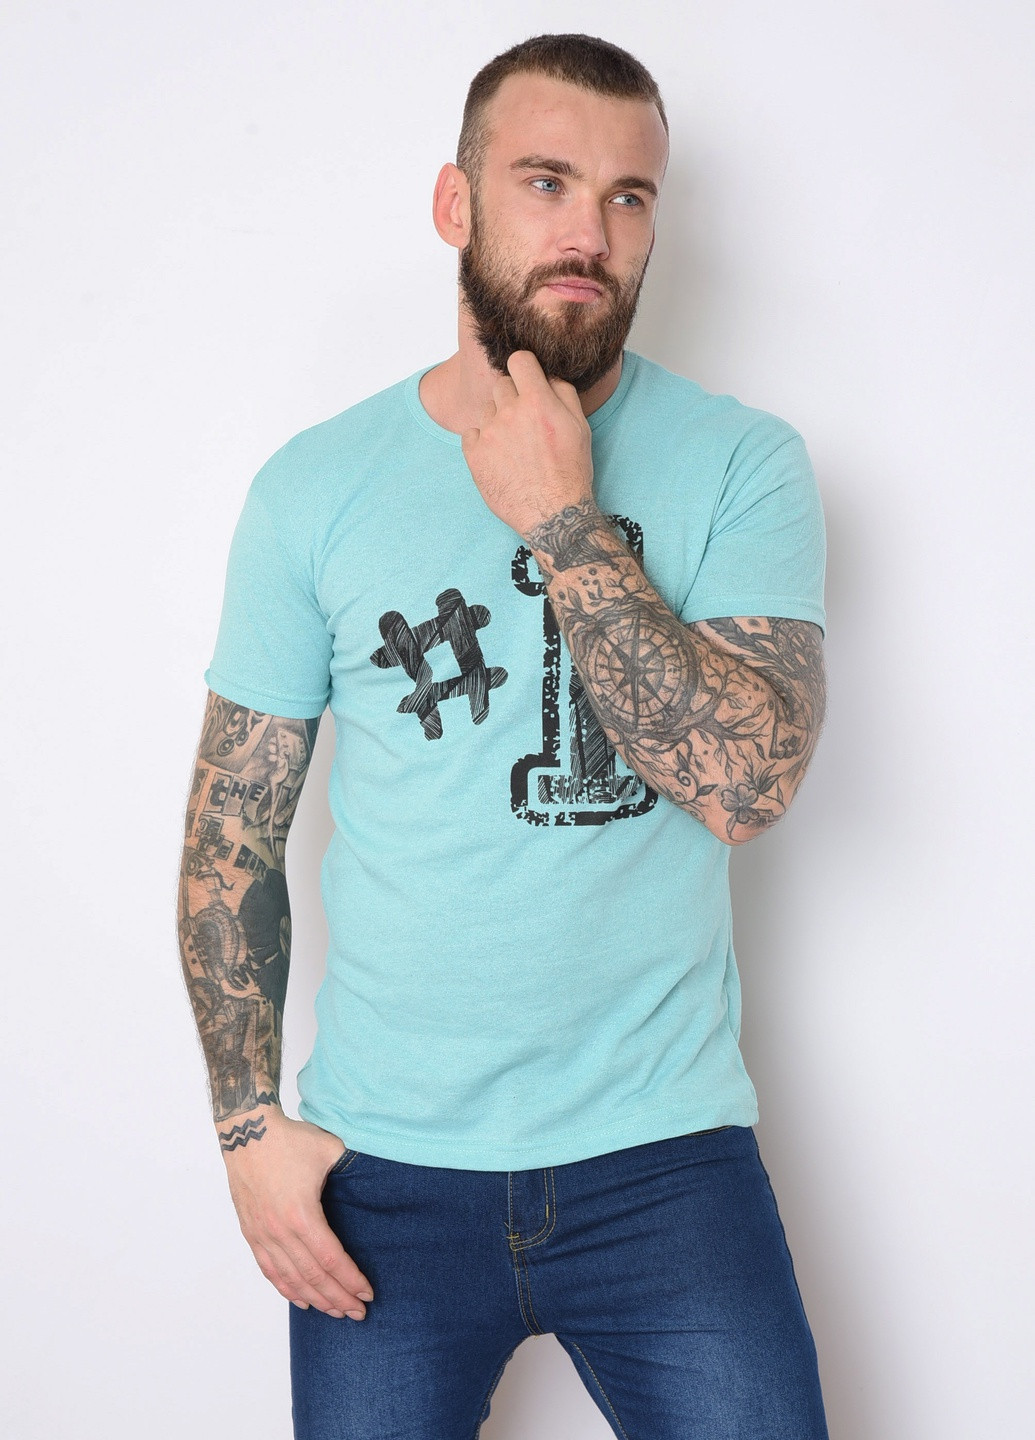 Бирюзовая футболка мужская бирюзового цвета с рисунком Let's Shop